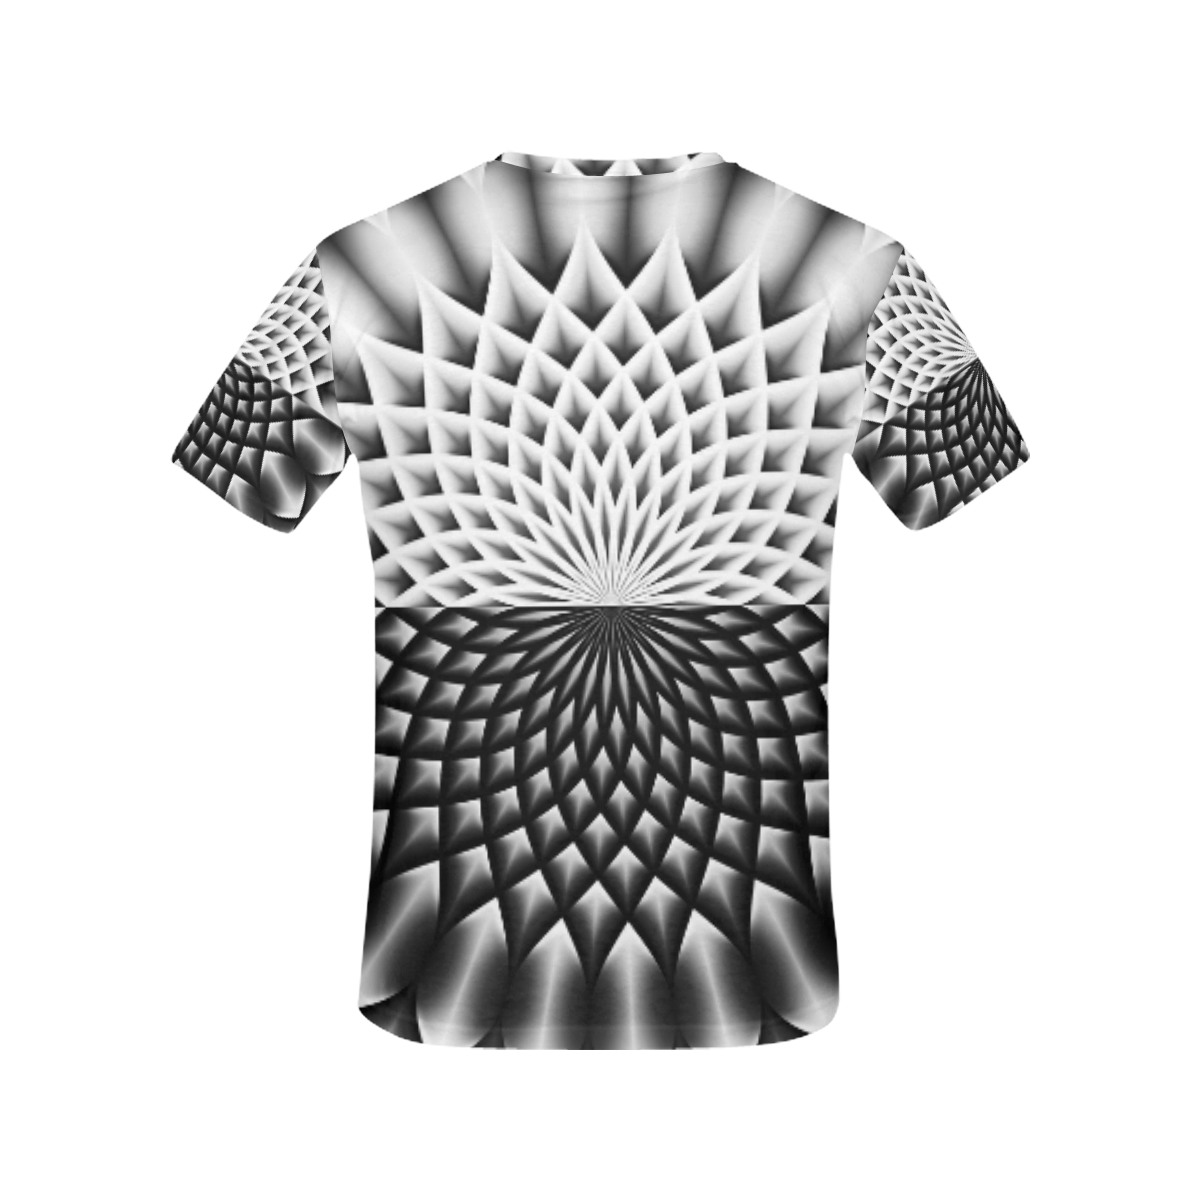 Lotus Flower Mandala Black Grey White All Over Print T-Shirt for Women (USA Size) (Model T40)